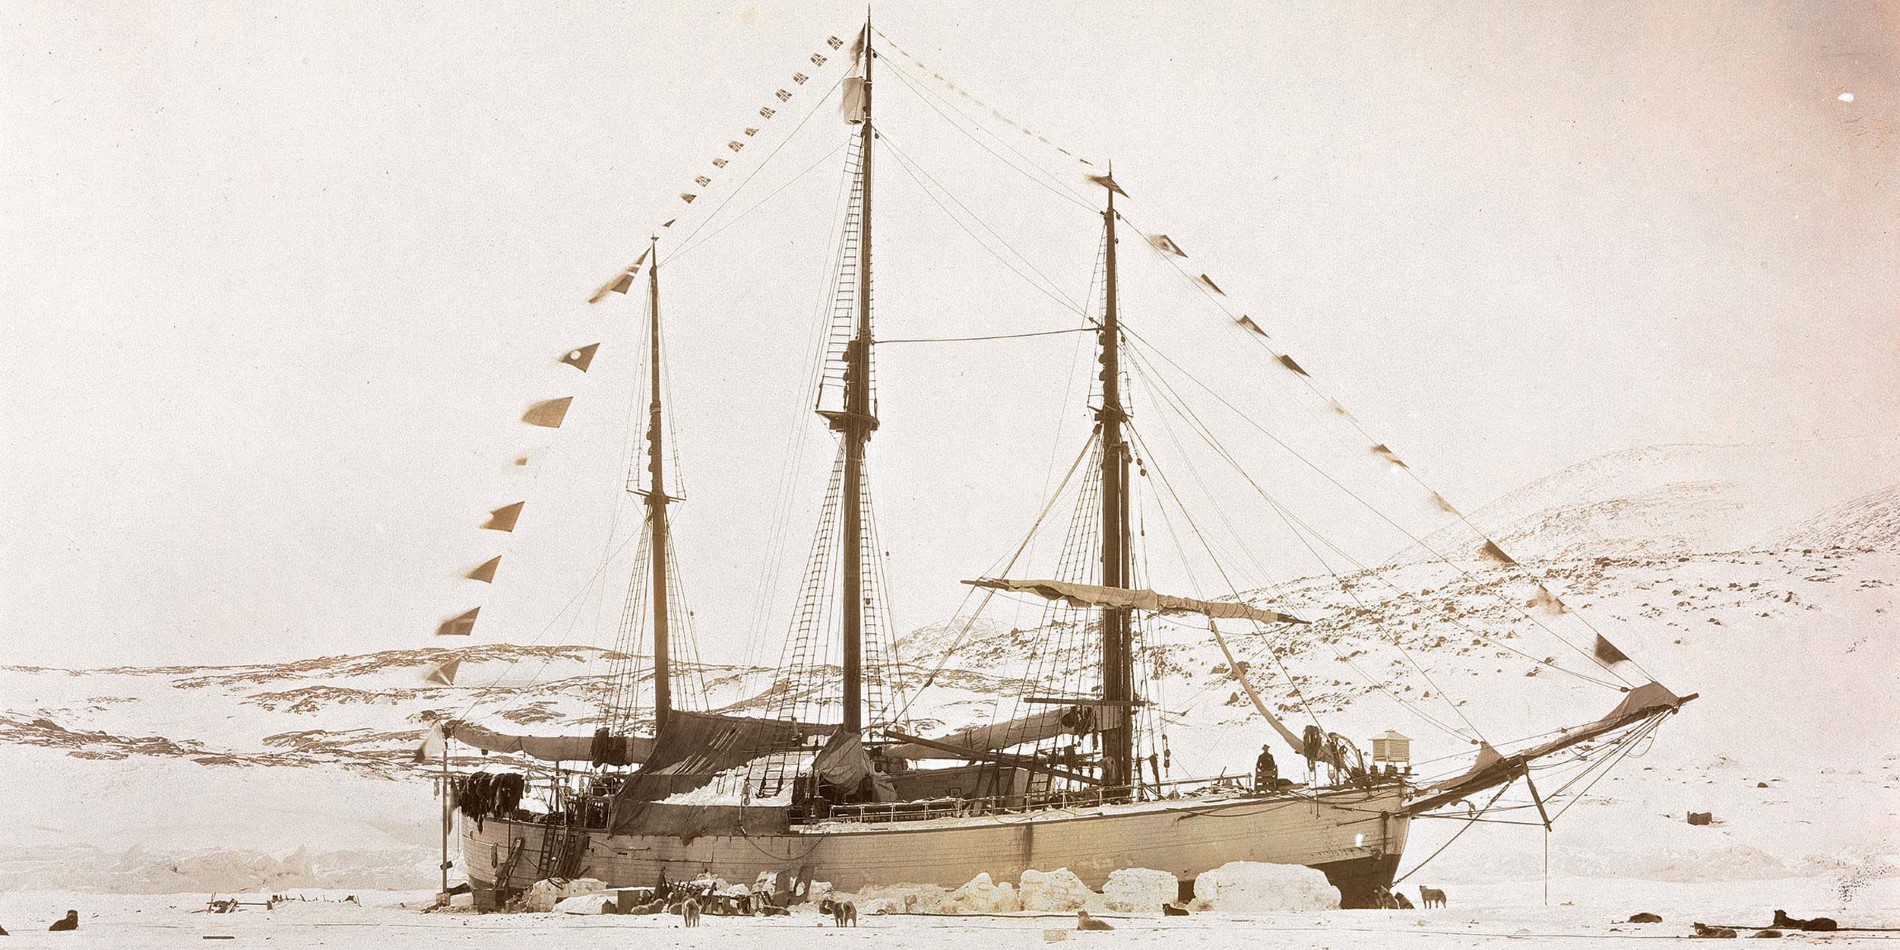 Vi seiler i kjølvannet av berømte oppdagelsesreisende og fartøy som fram, og vi har utforsket arktiske farvann siden 1896. 